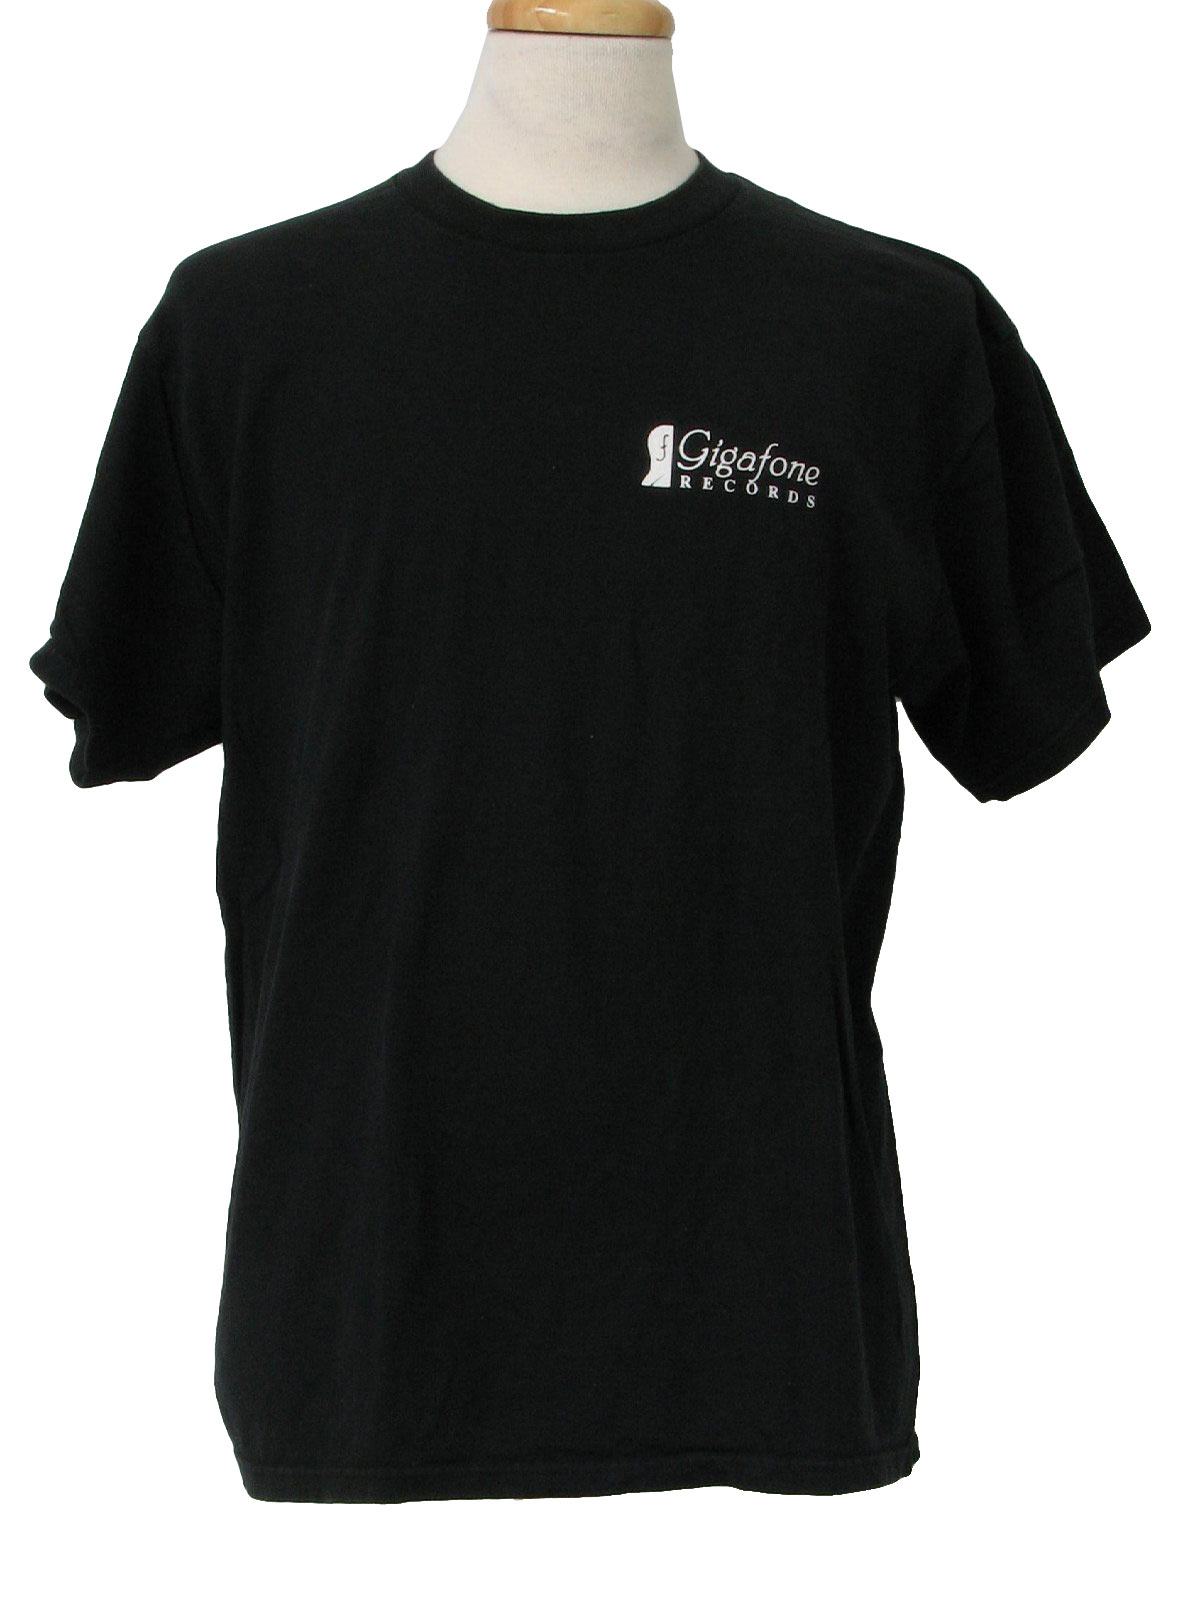 Vintage Delta 1990s T Shirt: 90s -Delta- Mens black and white -Gigafone ...